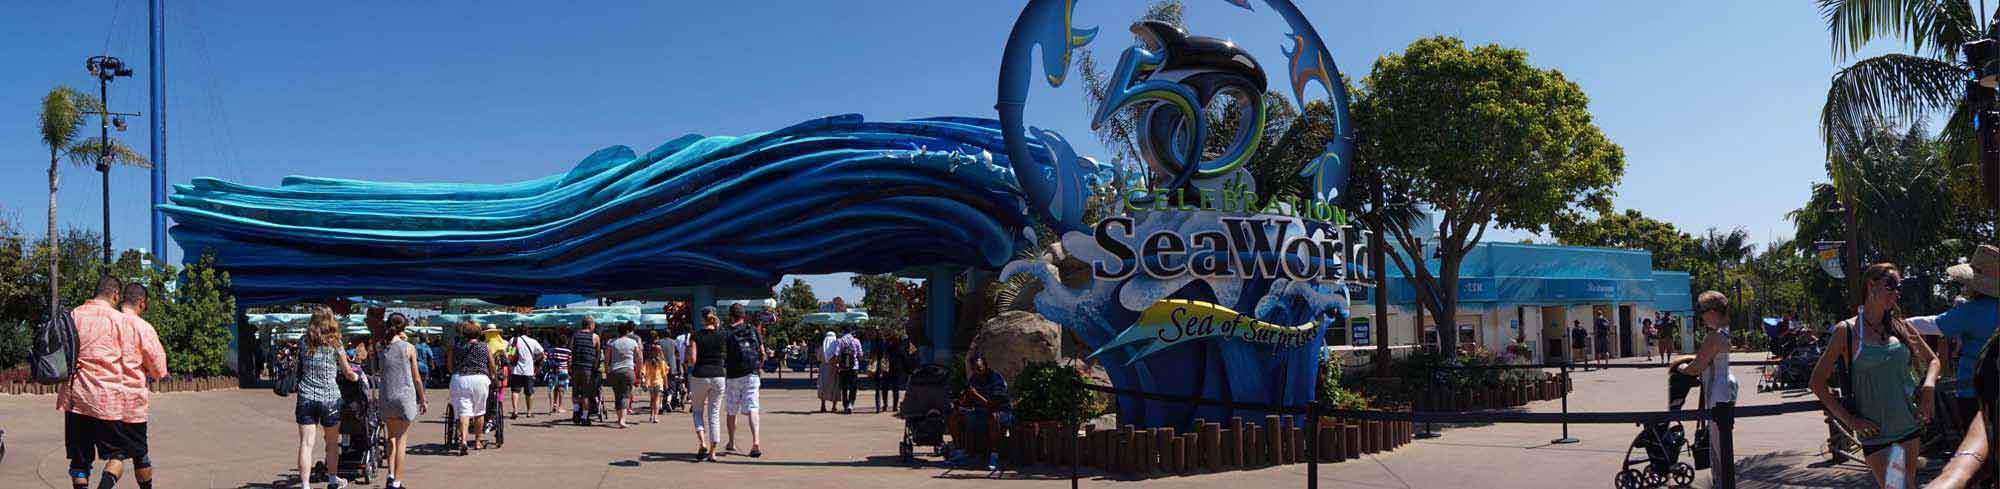 SeaWorld, San Diego, USA, Mořský svět